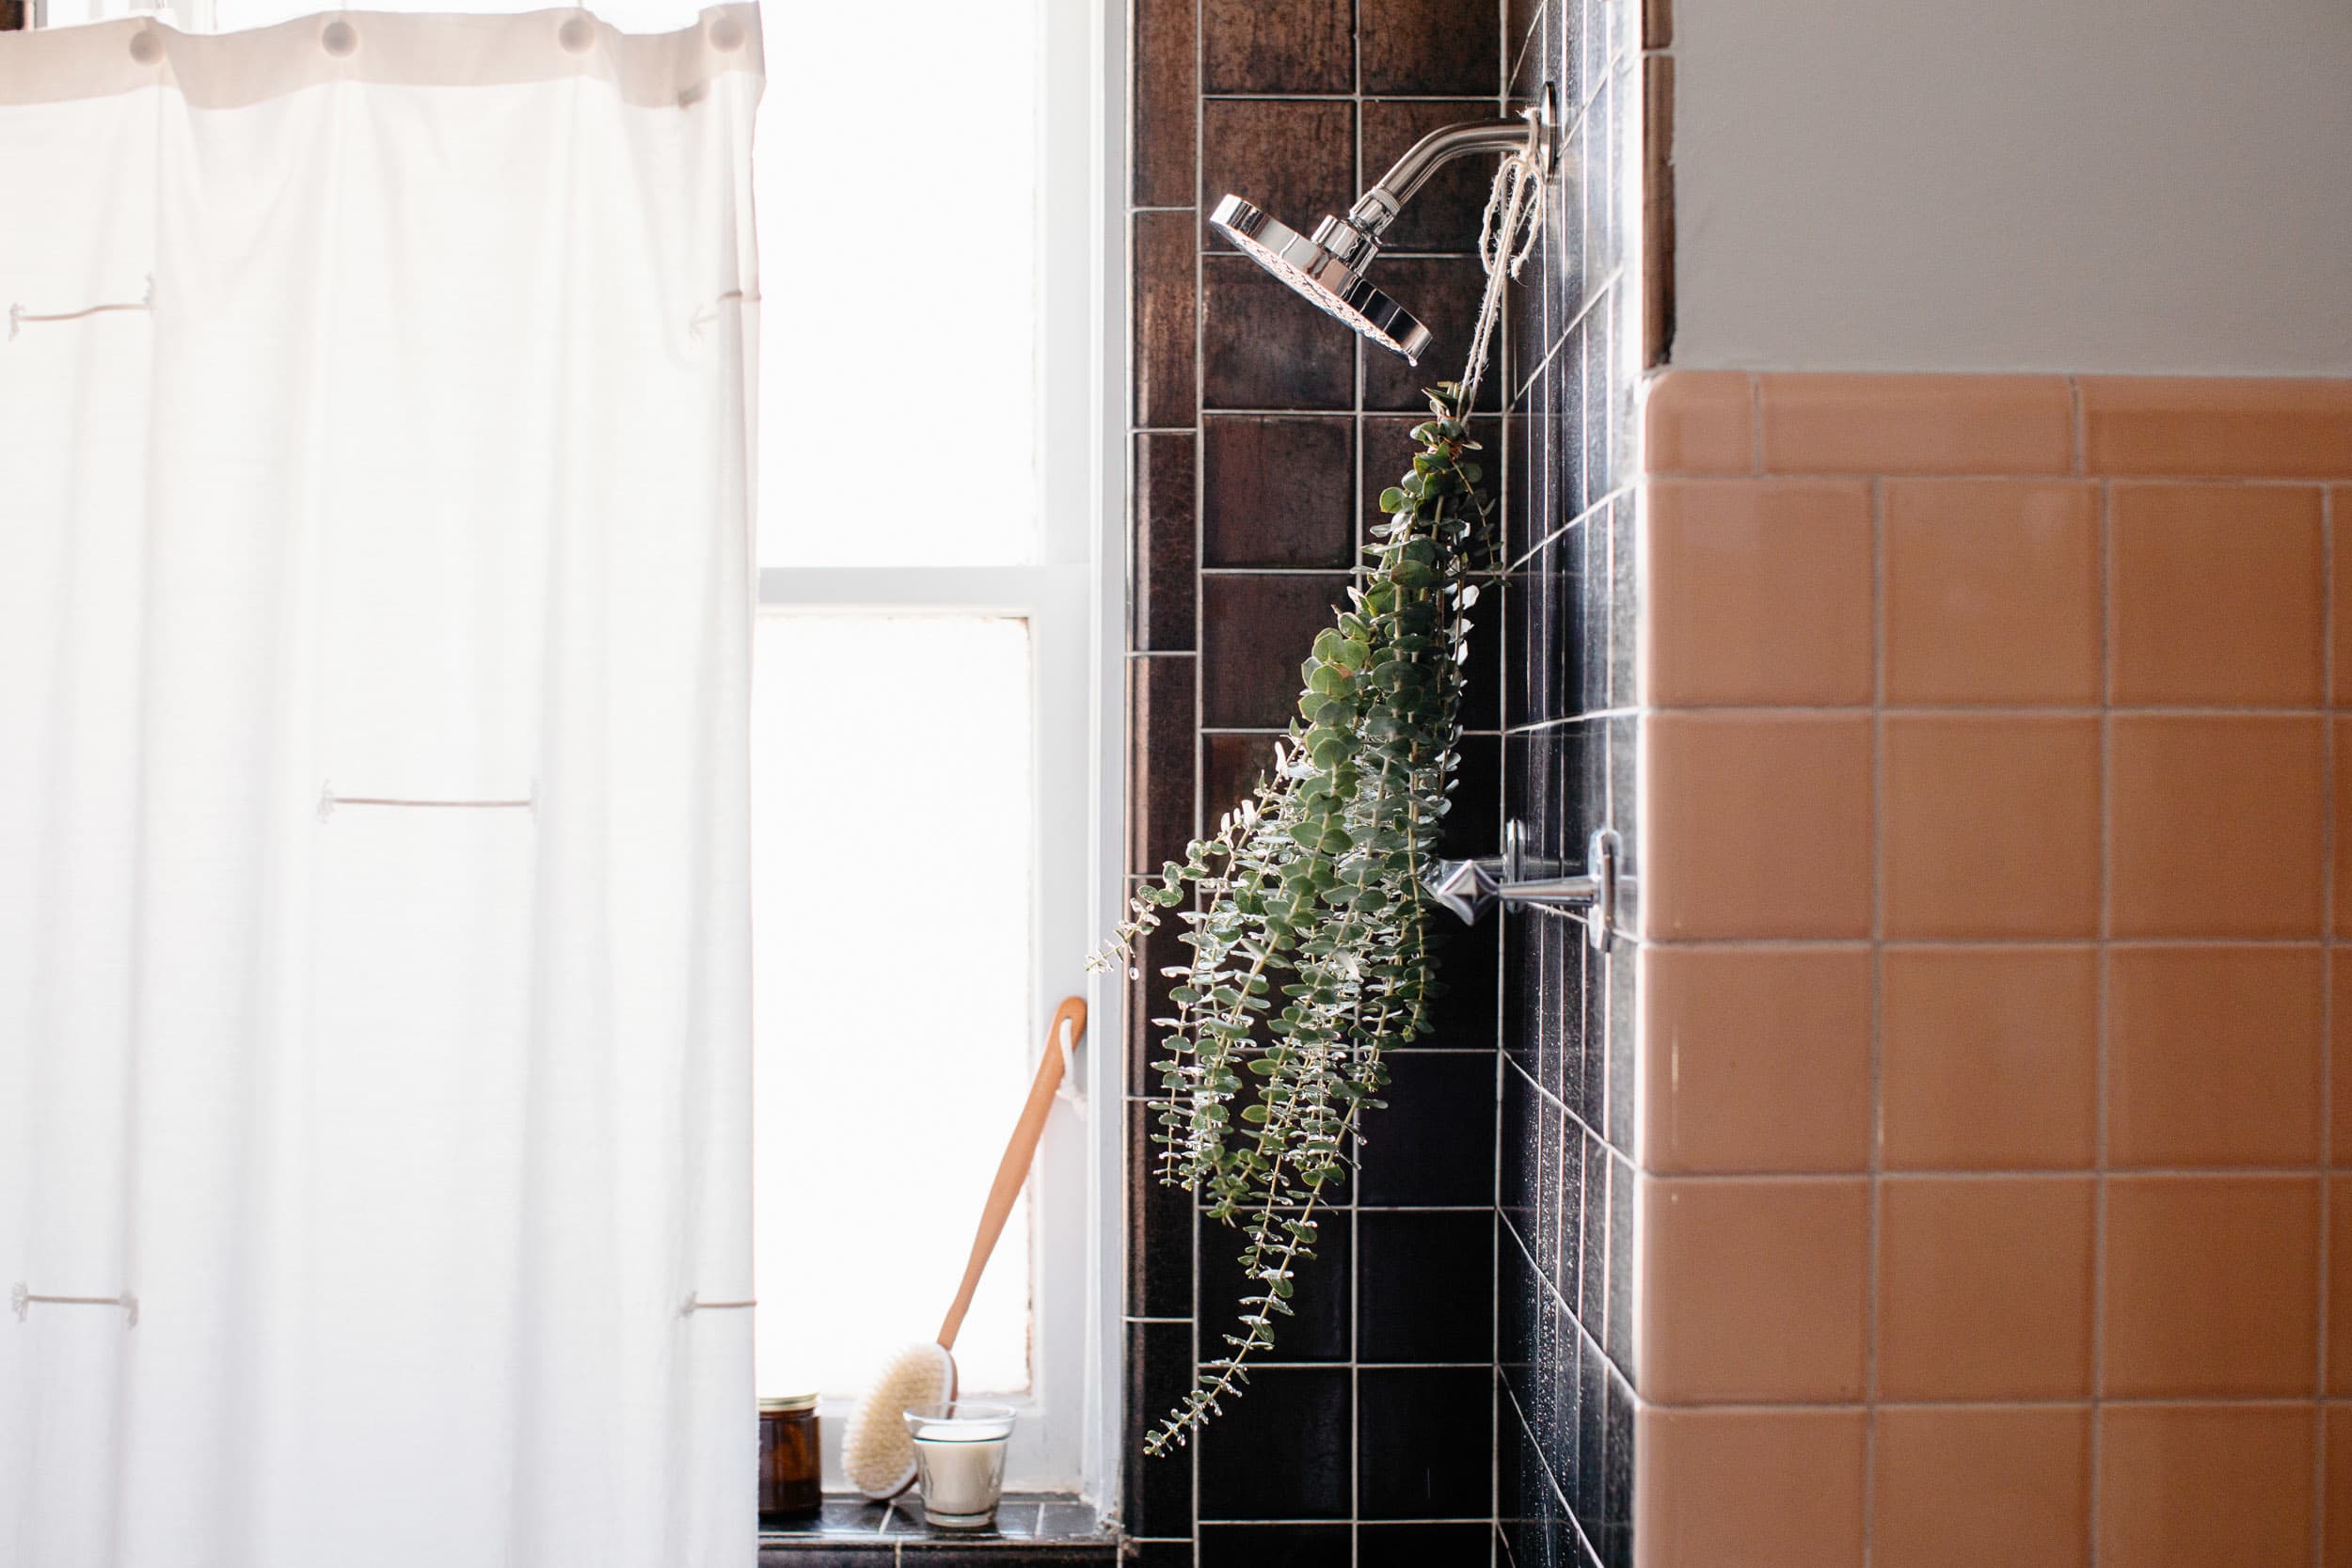 https://cdn.apartmenttherapy.info/image/upload/v1614345641/at/art/photo/2021-03/Eucalyptus-Shower/AT-2021-Eucalyptus-Shower-7.jpg